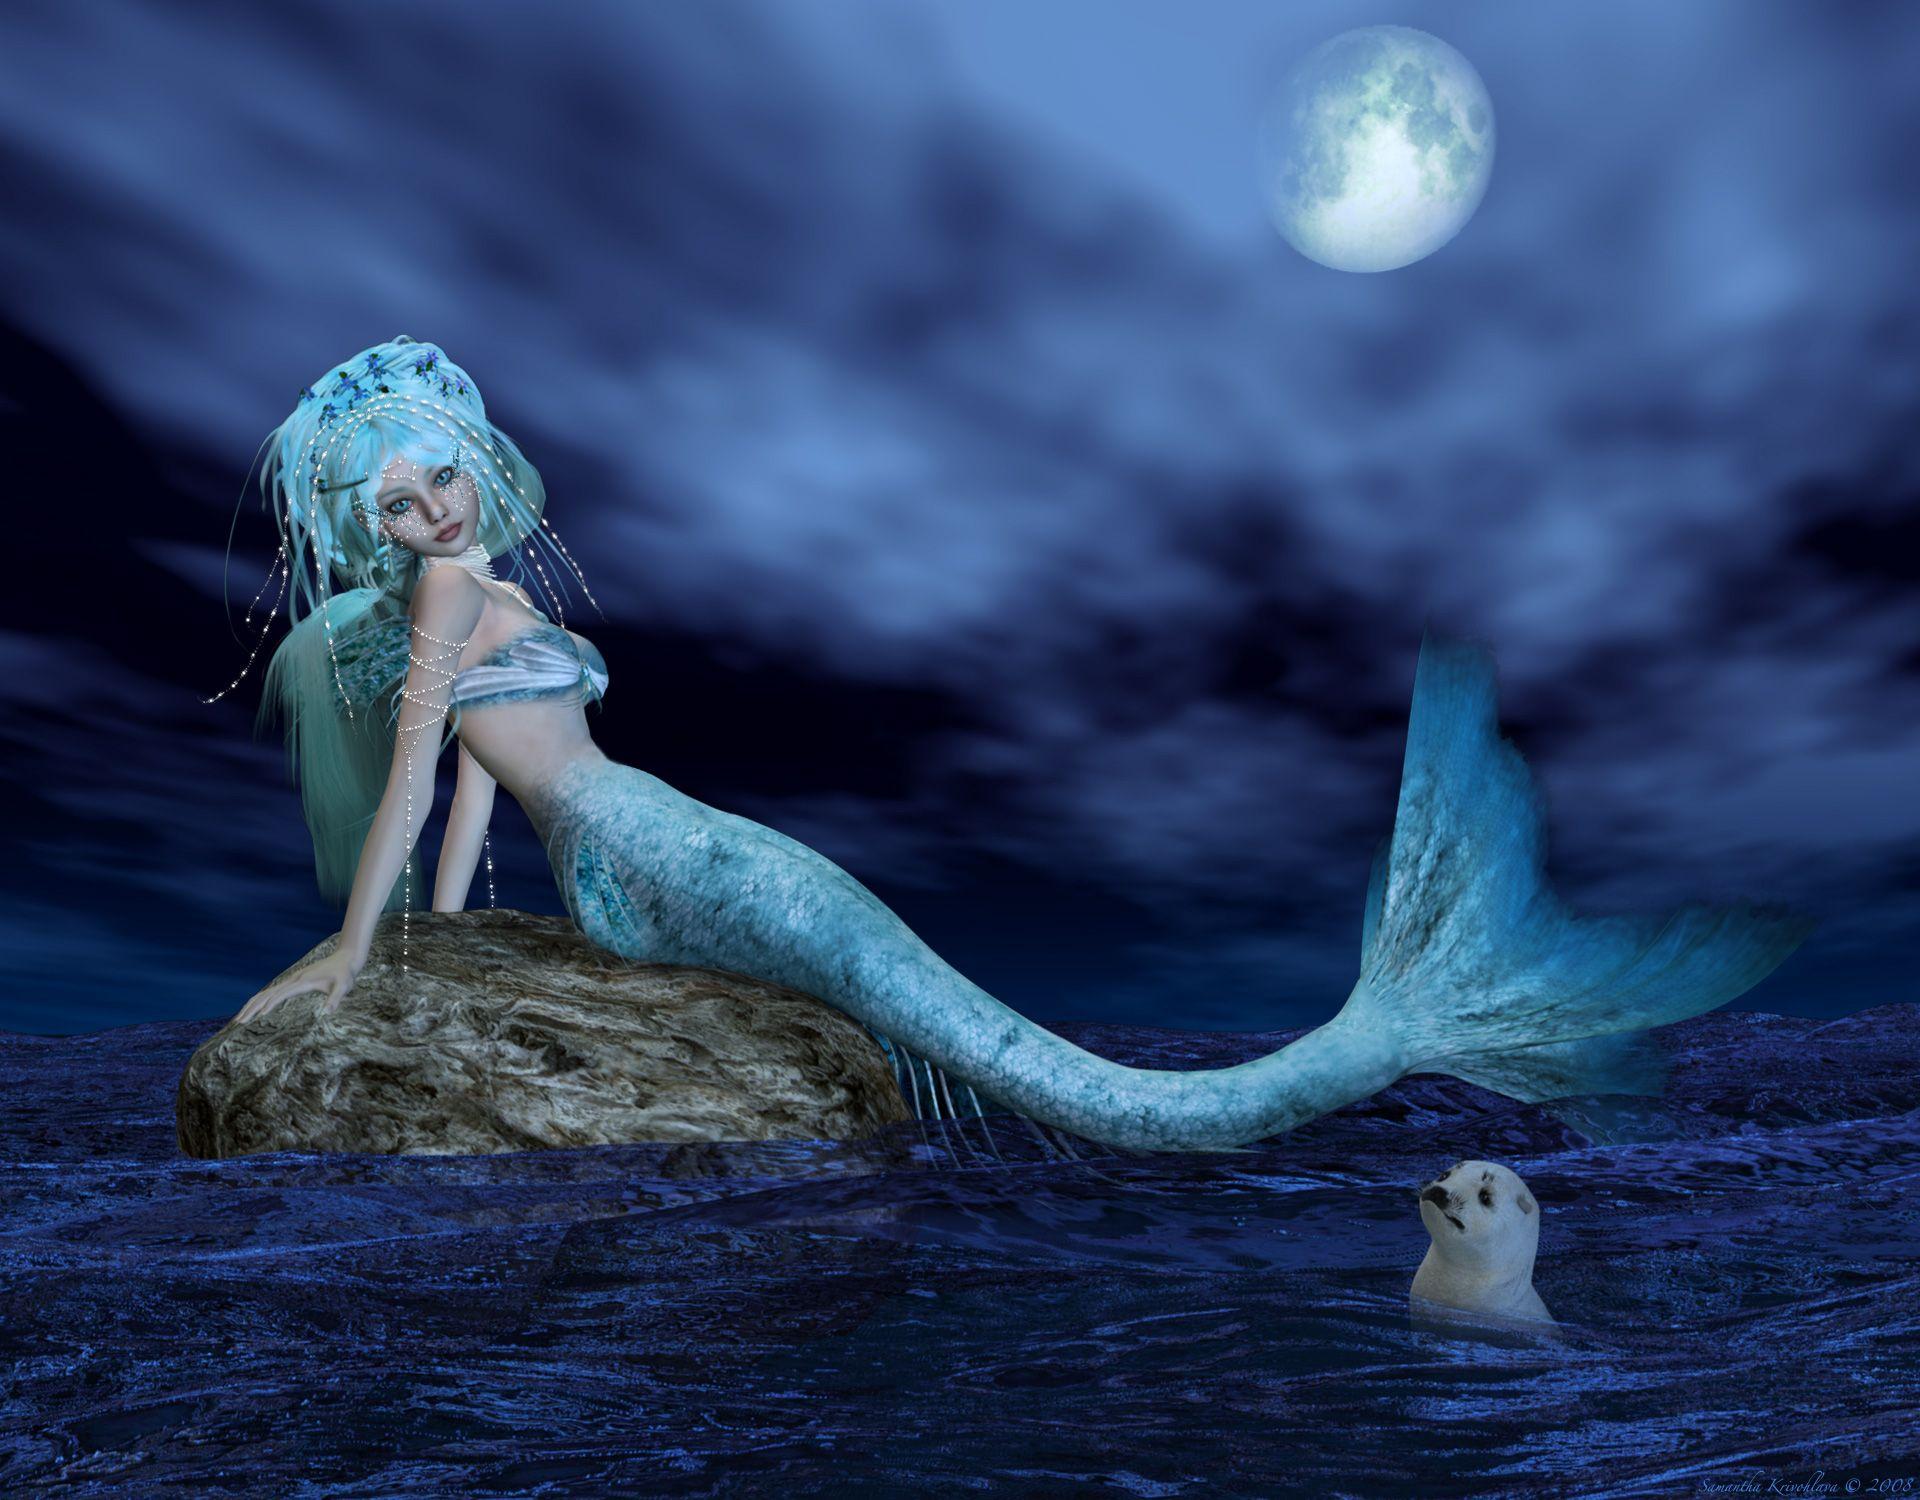 mermaid image. wallhud.com Beautiful Mermaids Wallpaper HD